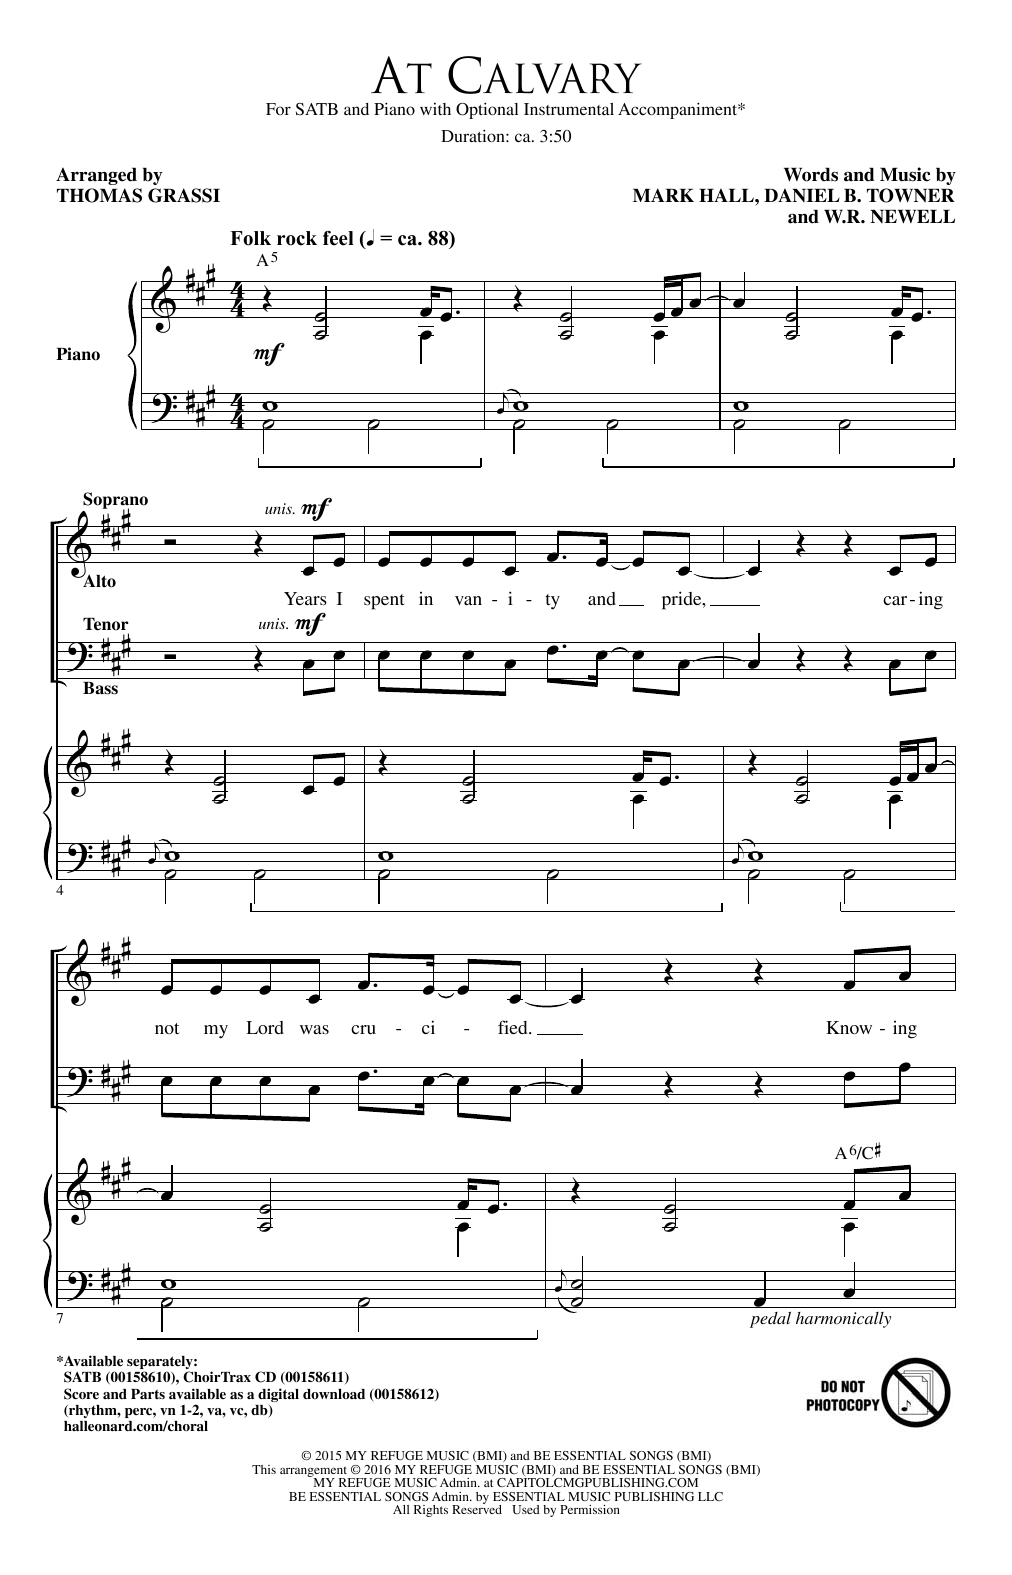 Thomas Grassi At Calvary Sheet Music Notes & Chords for SATB - Download or Print PDF